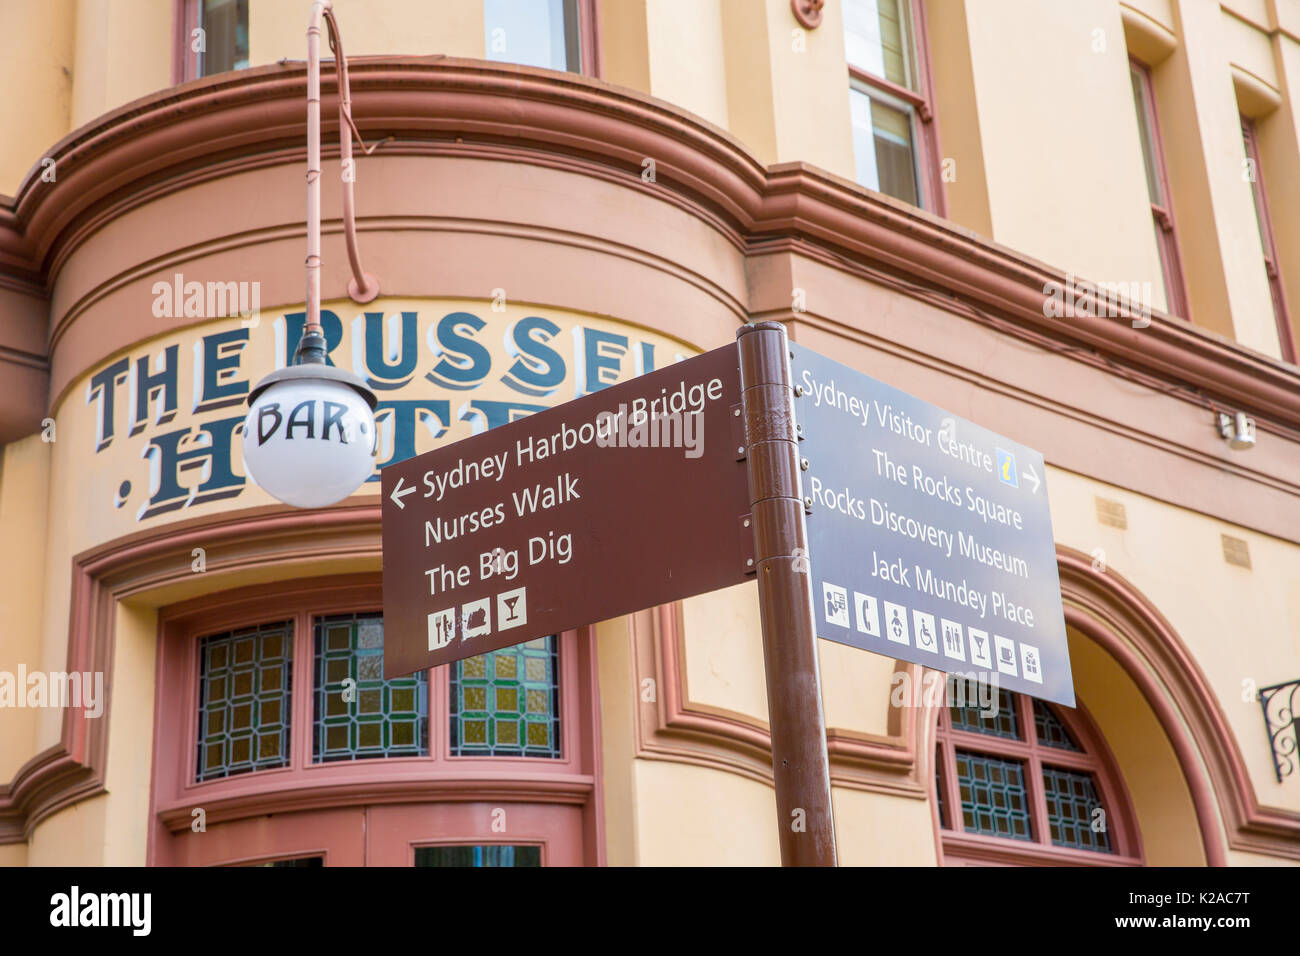 La histórica zona de Rocks de Sydney en el centro de la ciudad donde comenzó la colonización blanca,Sydney,Australia. Foto de Russell Hotel Sydney y pub Foto de stock